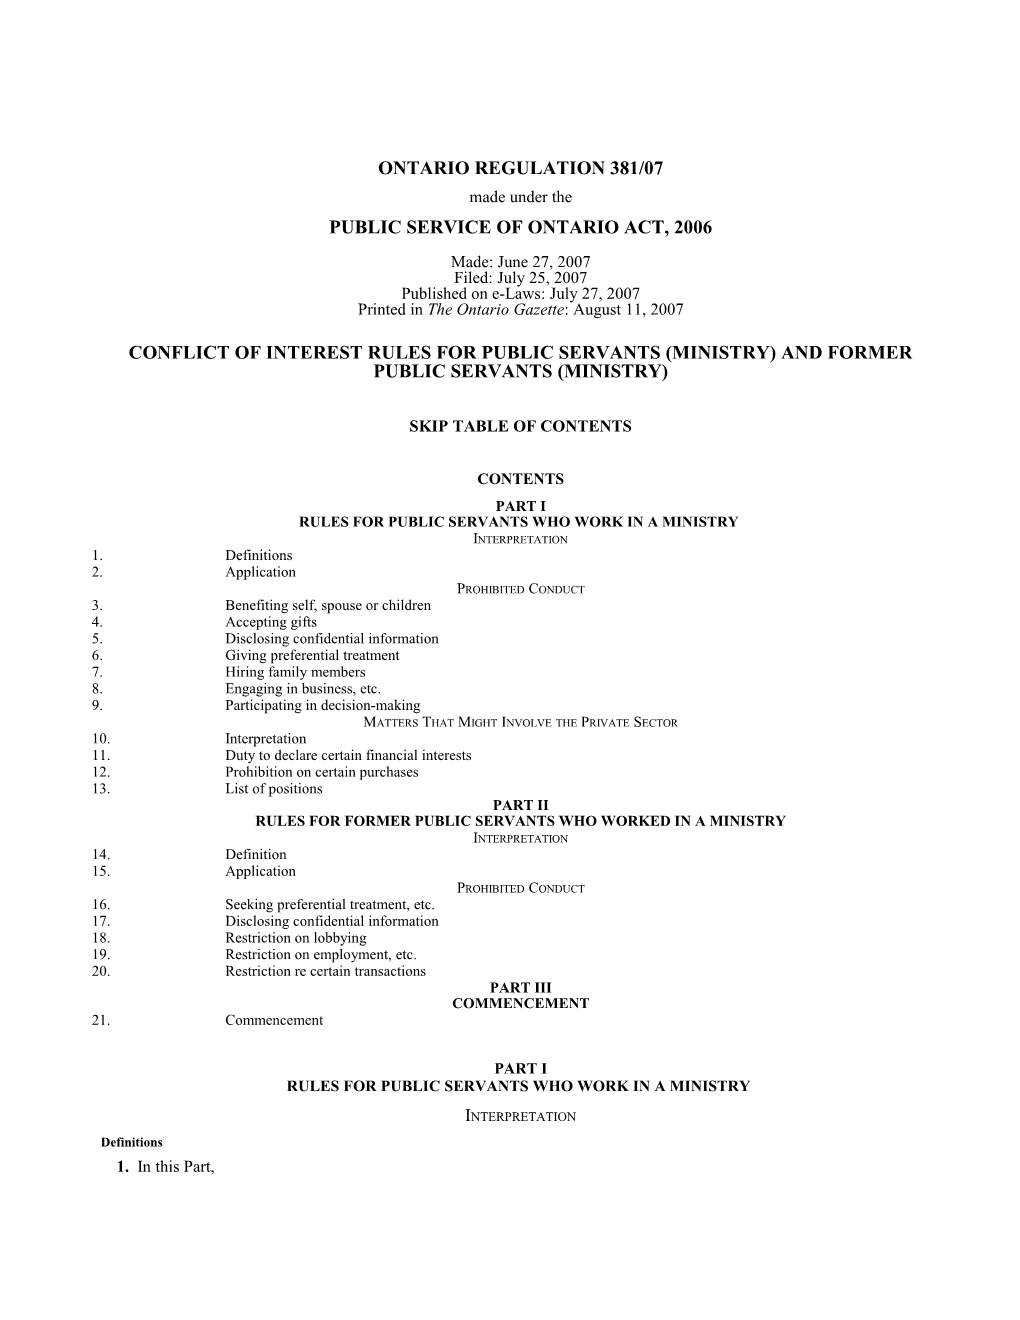 PUBLIC SERVICE of ONTARIO ACT, 2006 - O. Reg. 381/07